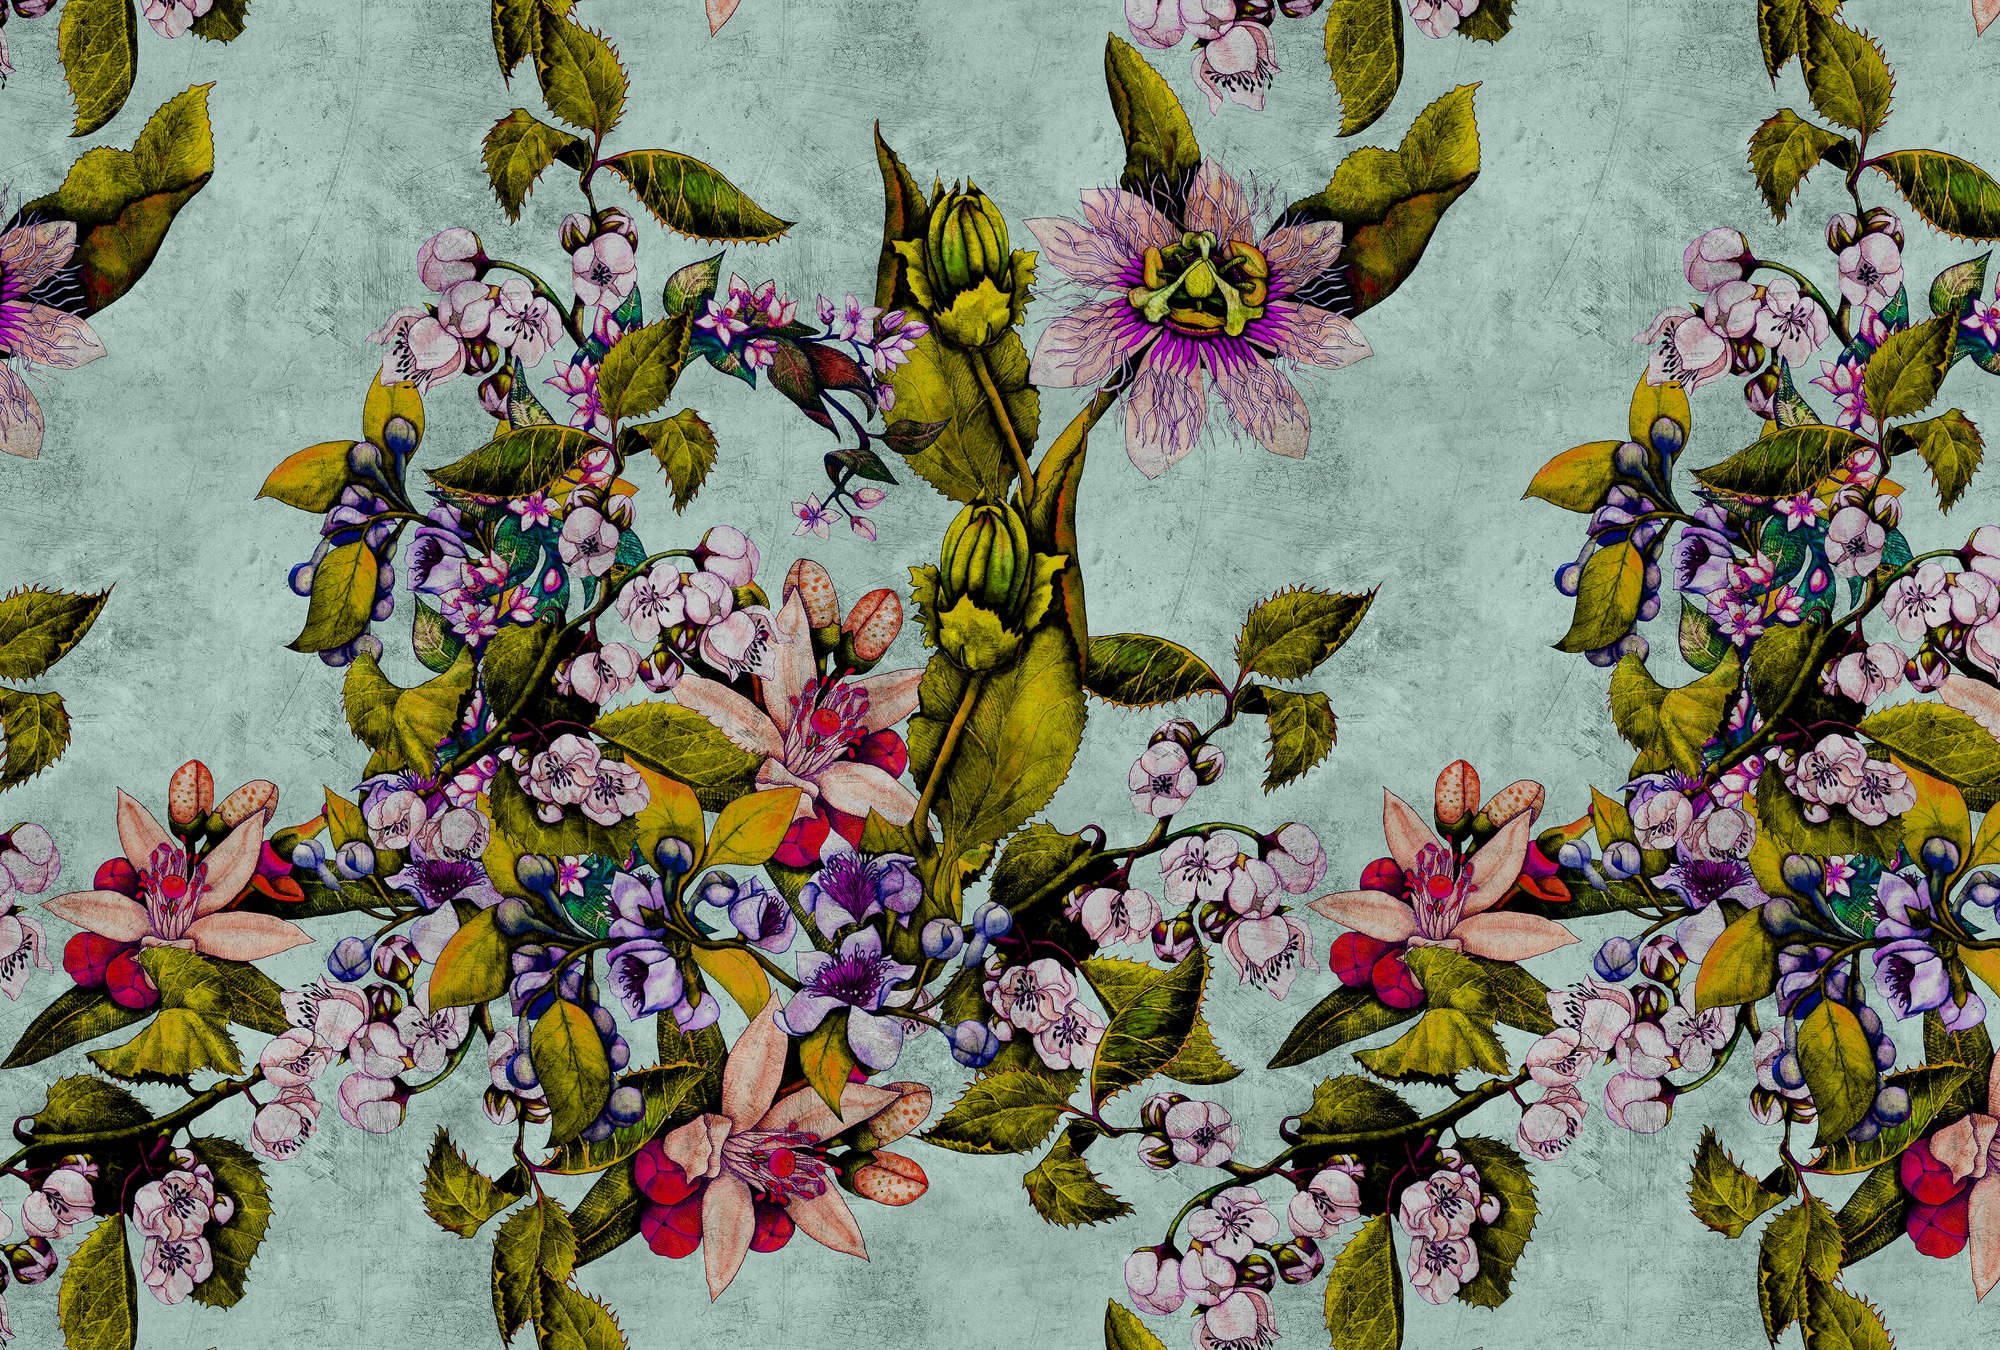             Tropical Passion 2 - Fototapete in kratzer Struktur mit Blüten und Knospen – Grün | Perlmutt Glattvlies
        